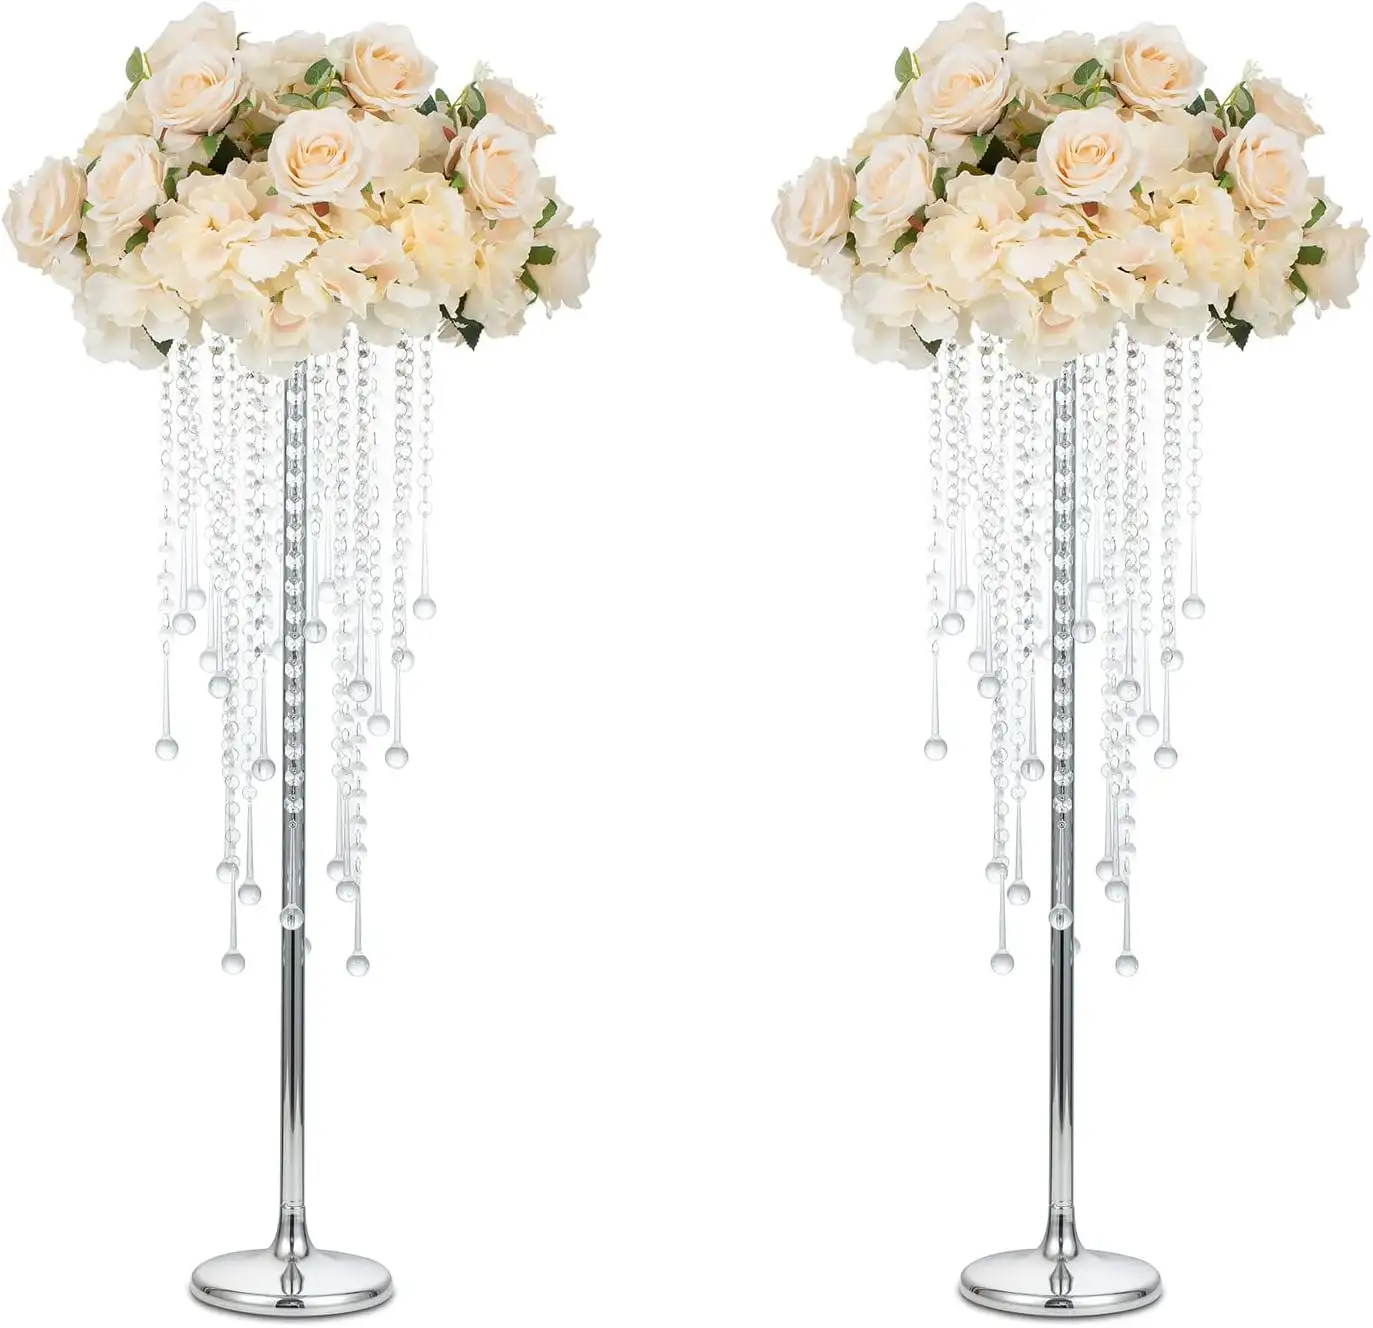 Fabrika doğrudan tedarikçi düğün şamdan çiçek standı Metal şamdan sahipleri için kristal kolye ile düğün Centerpieces